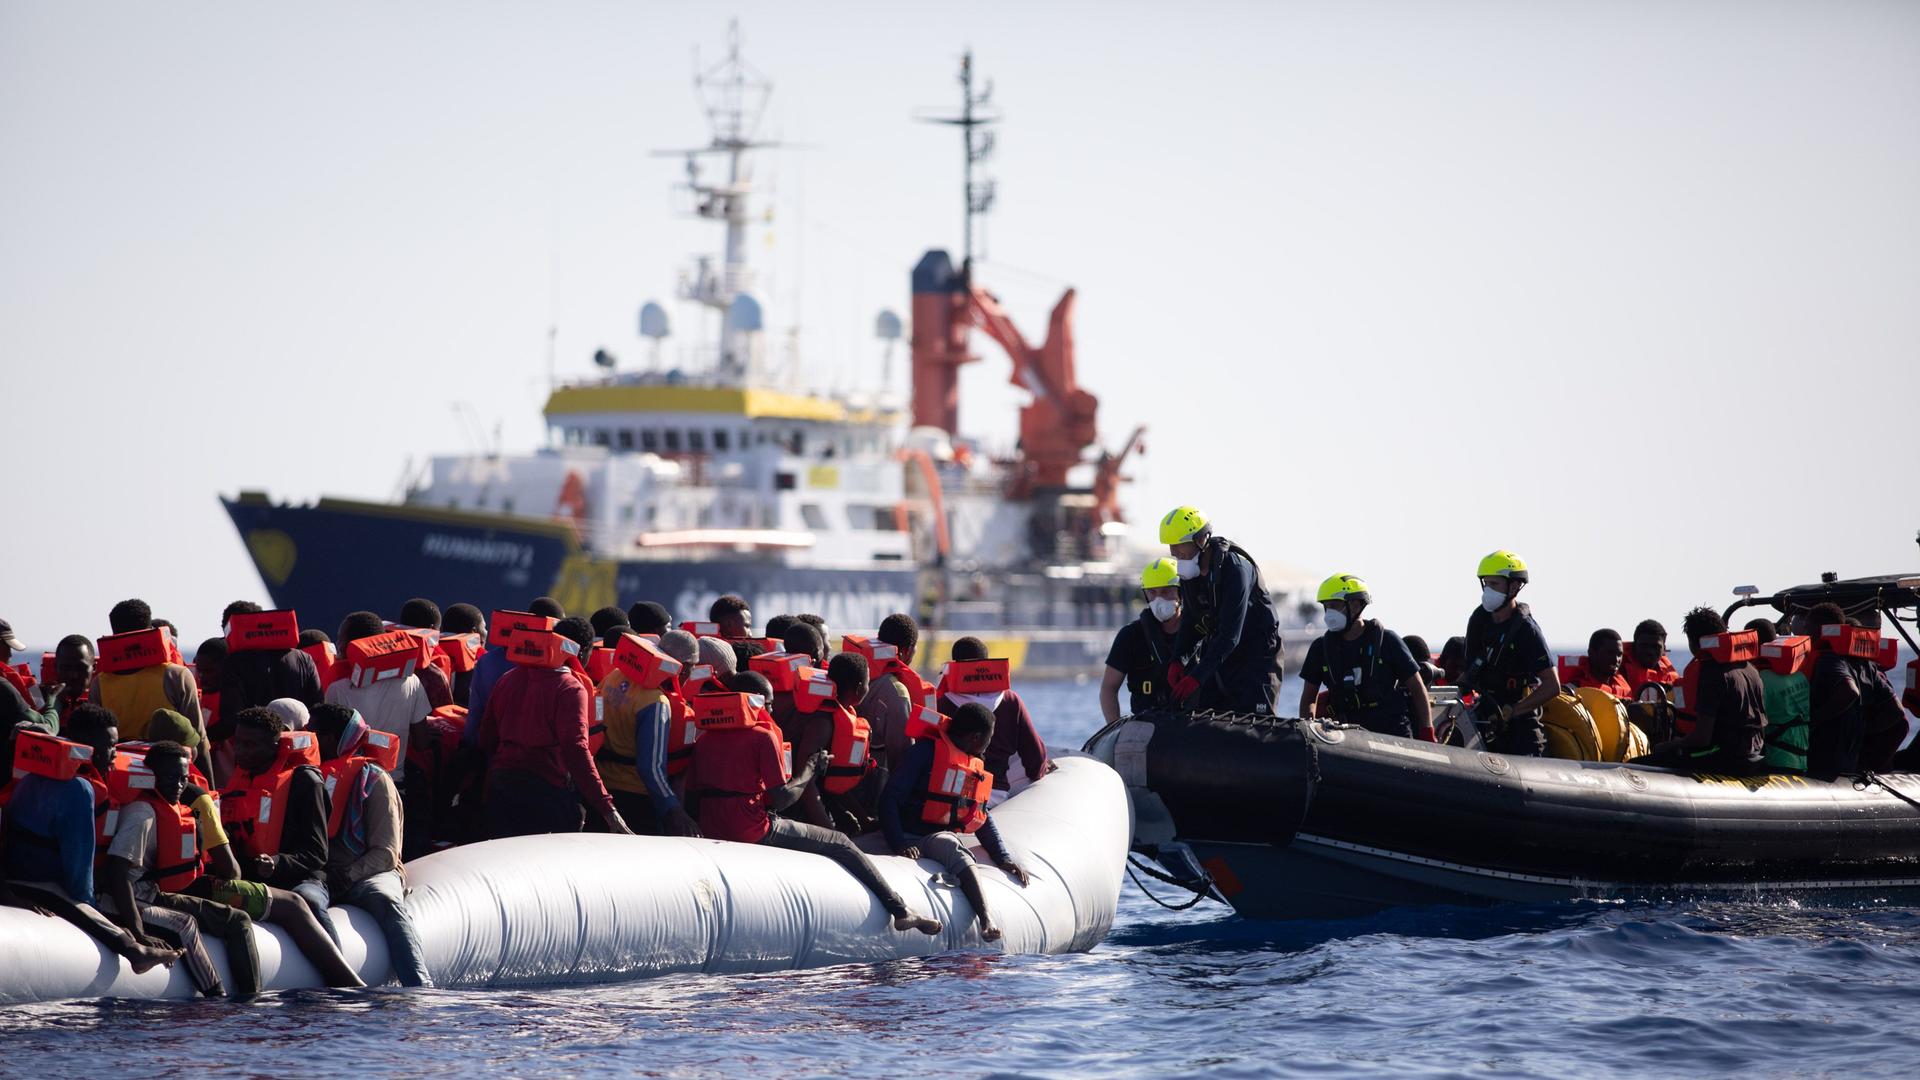 Mittelmeer: Das deutsche Seenotrettungsschiff "Humanity 1" ist im Mittelmeer im Einsatz und holt 135 Migranten an Bord.